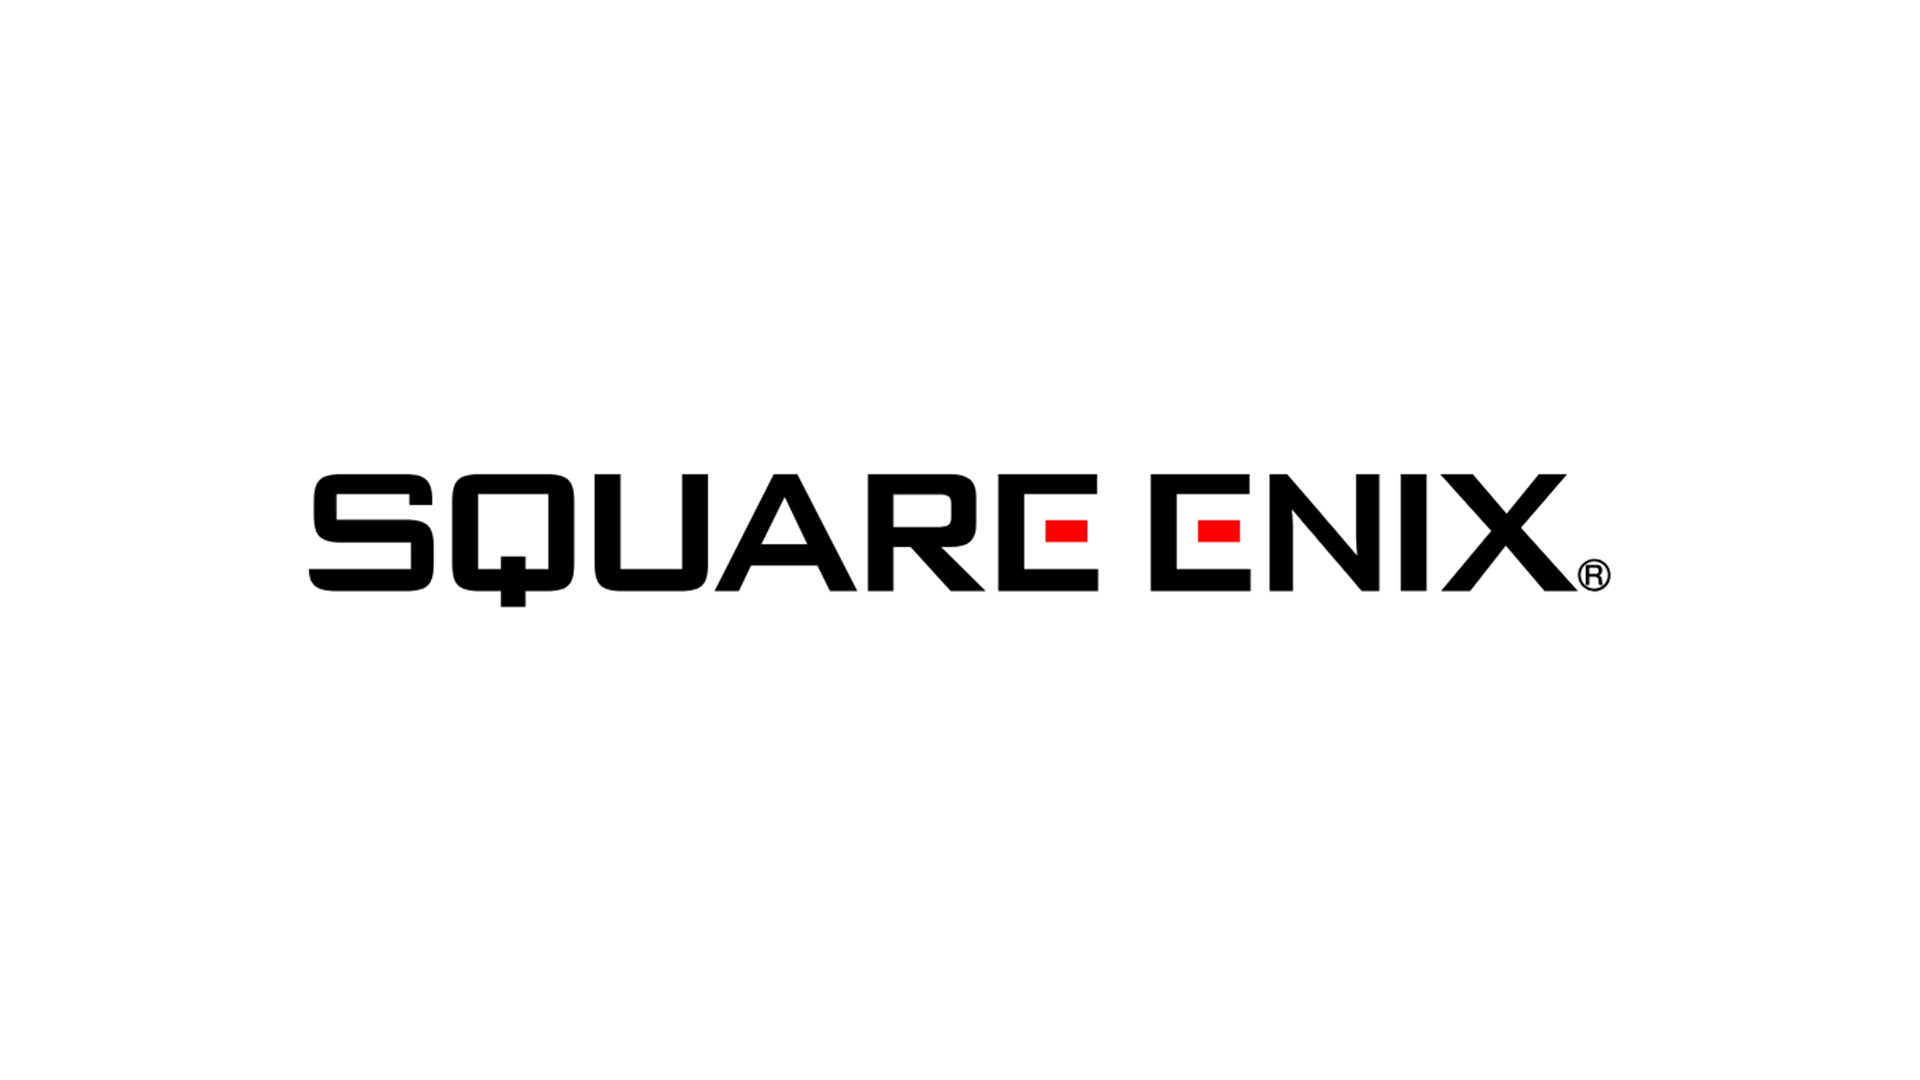 شرکت Square Enix بازی های بیشتری را بازسازی می کند